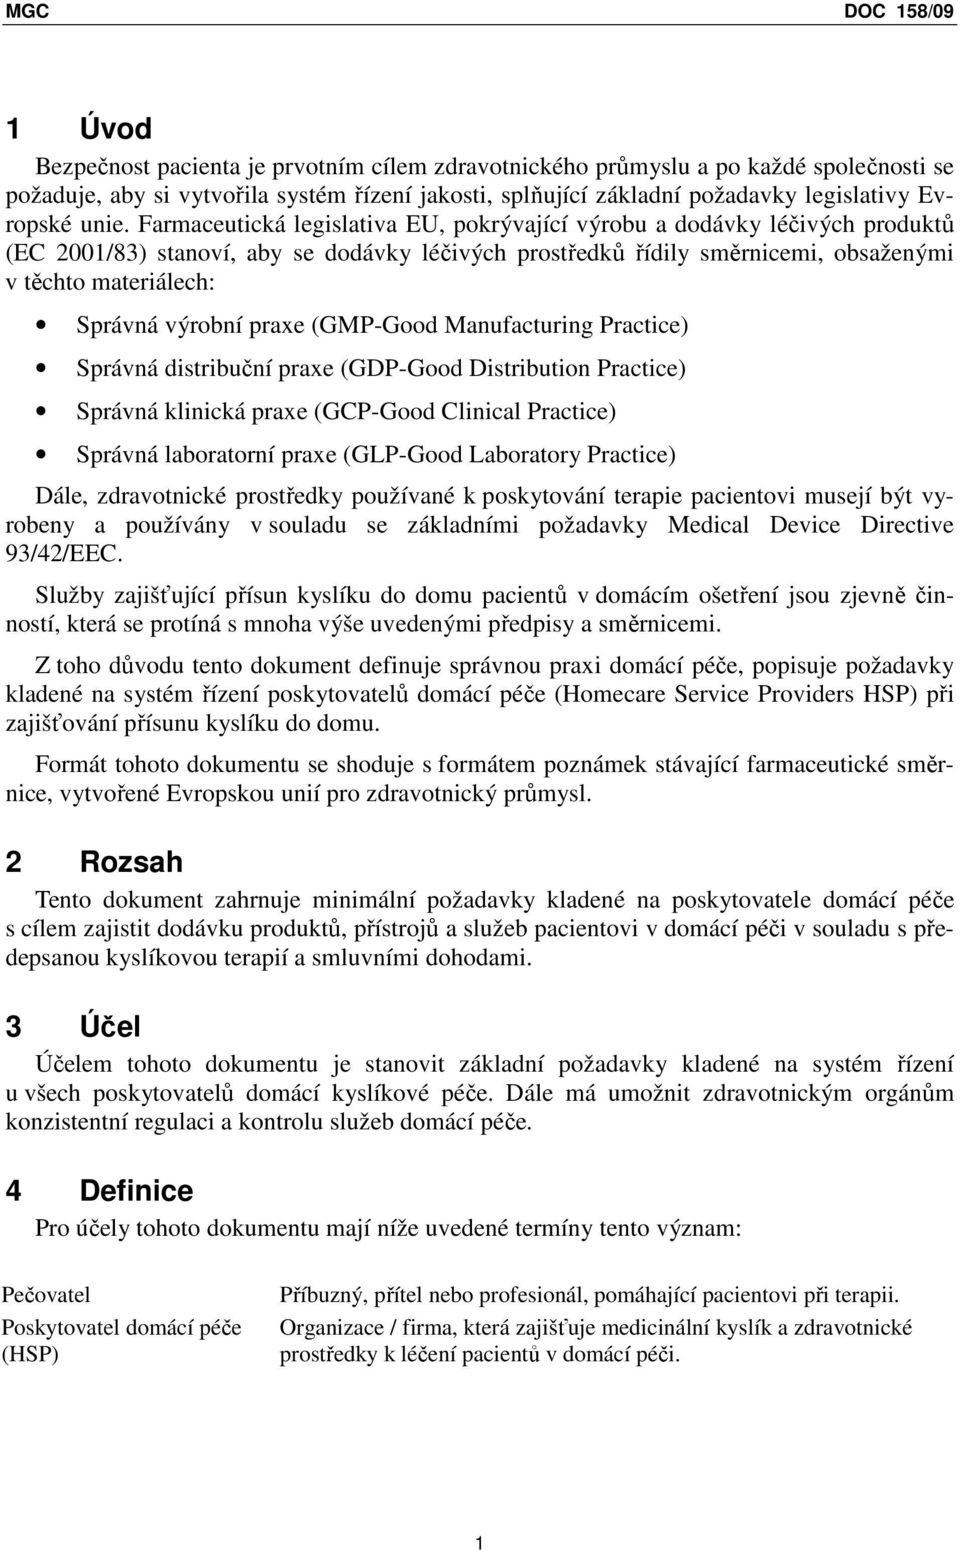 výrobní praxe (GMP-Good Manufacturing Practice) Správná distribuční praxe (GDP-Good Distribution Practice) Správná klinická praxe (GCP-Good Clinical Practice) Správná laboratorní praxe (GLP-Good